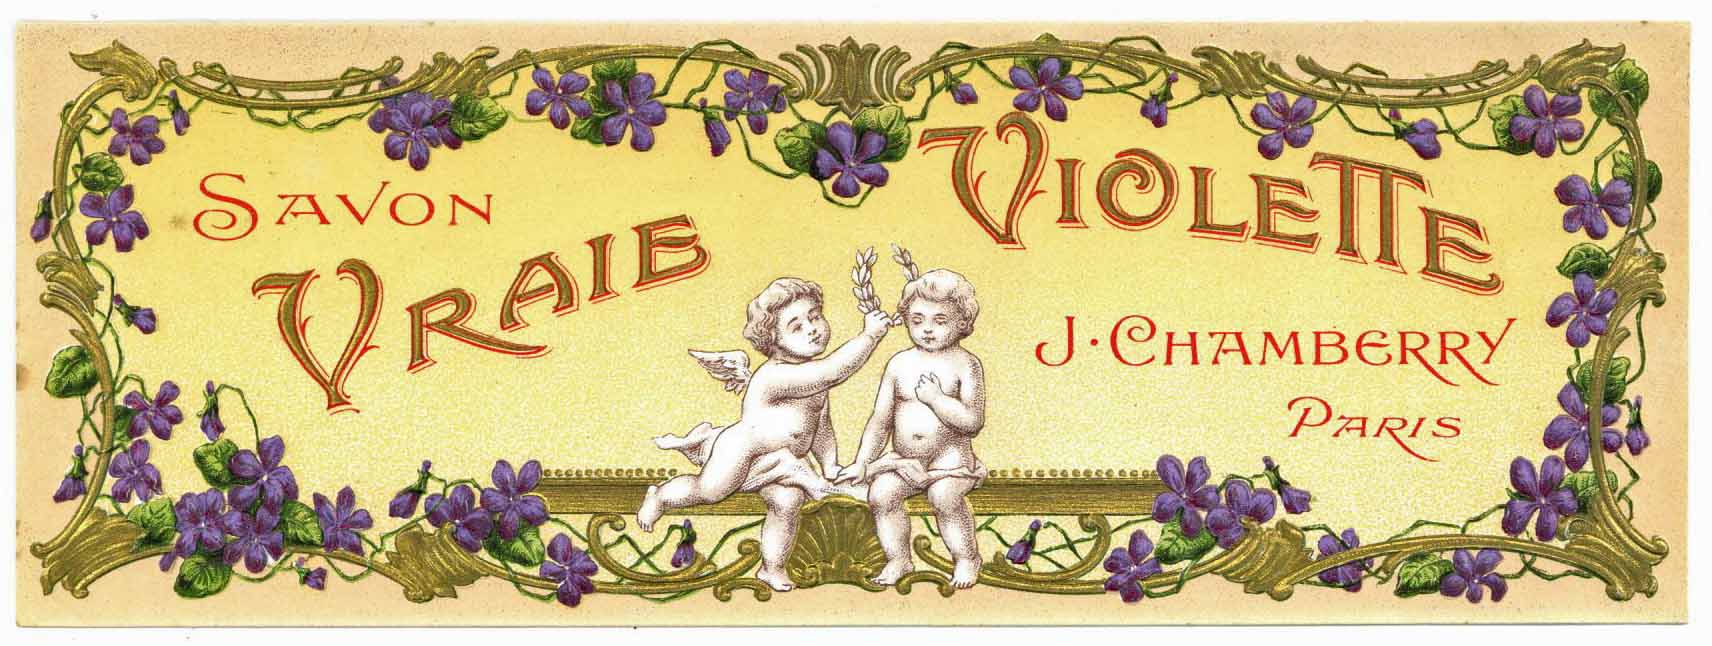 Savon Vraie Violette Brand Vintage Paris France Soap Label